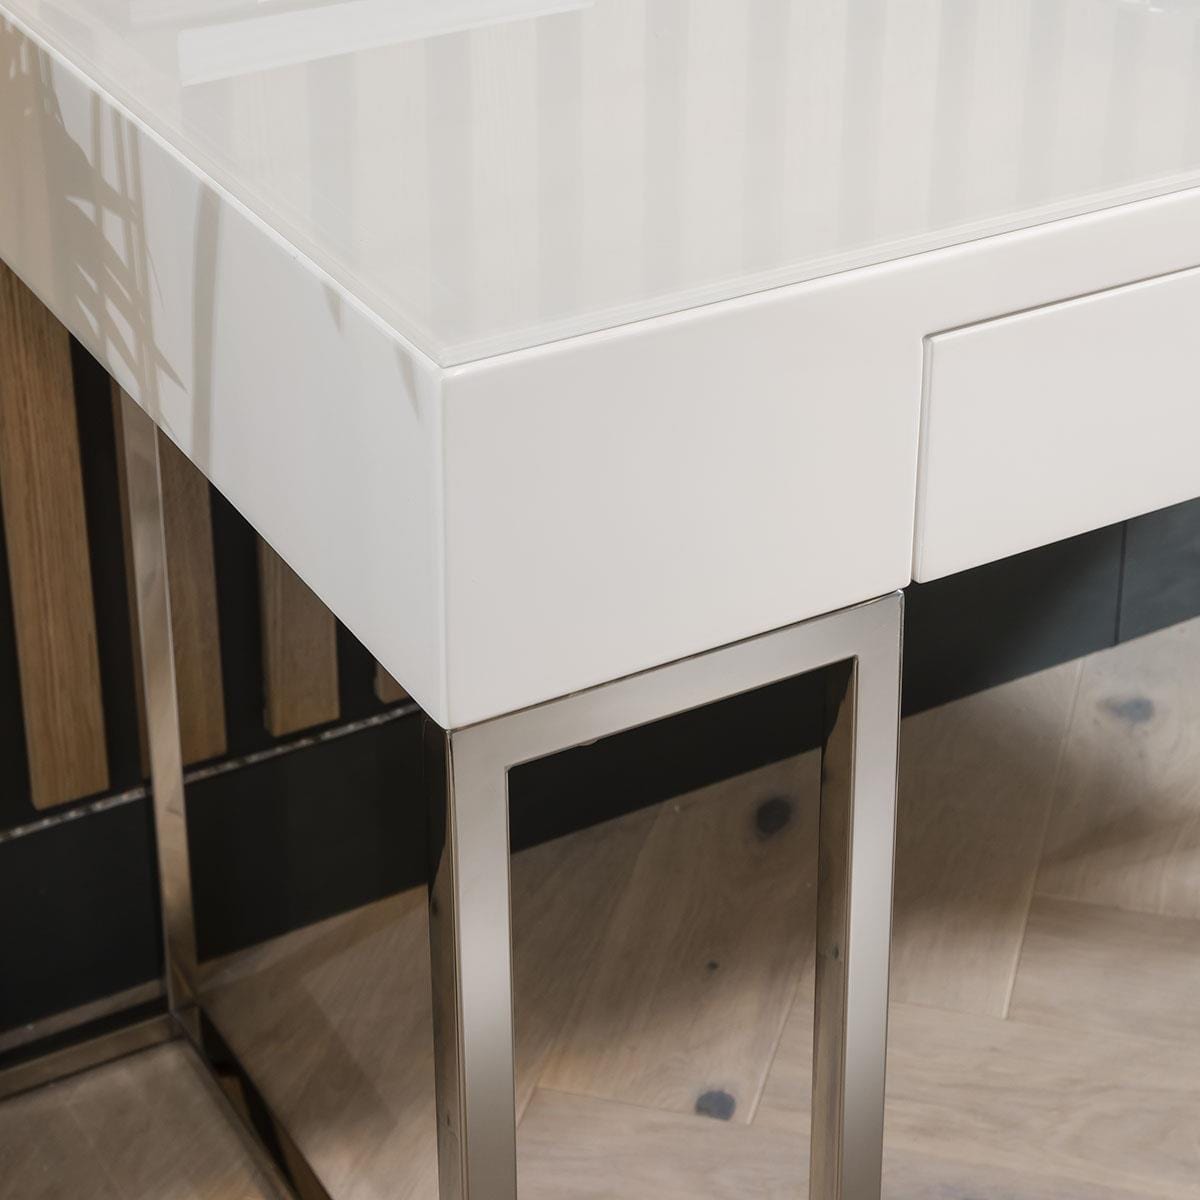 Quatropi Quatropi Rectangular Office Desk 160cm White Gloss - Glass Top & Metal Legs